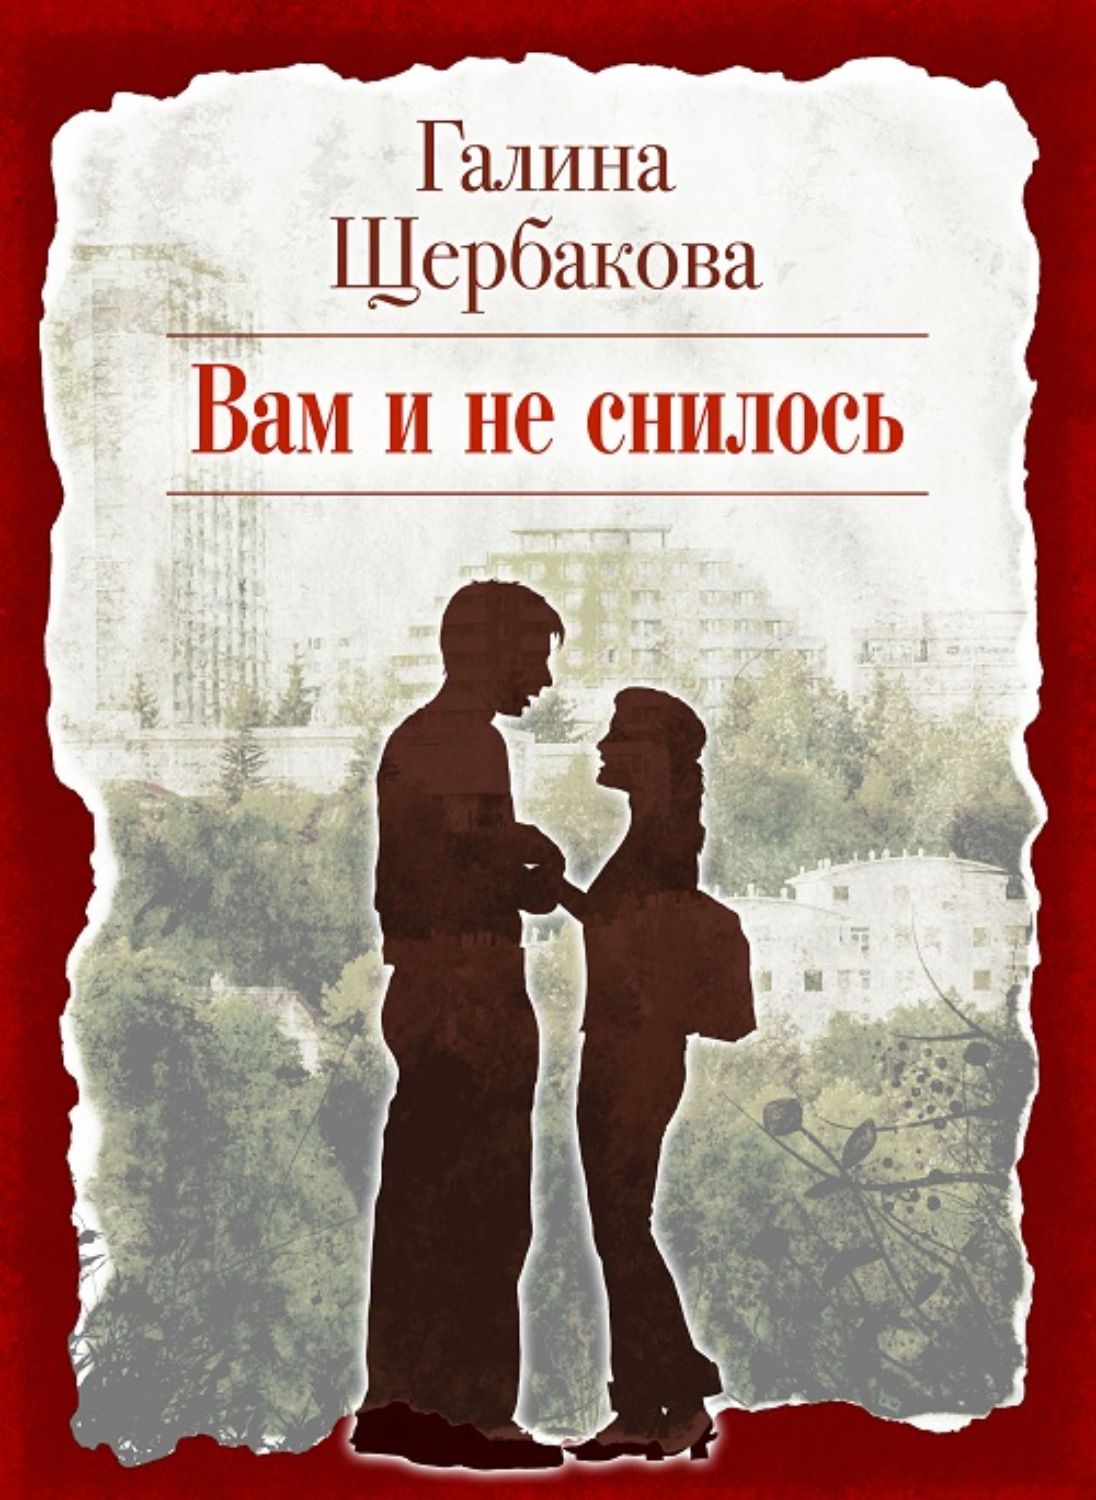 Найти рассказы и романы. Щербакова вам и не снилось обложка книги. Г Щербакова вам и не снилось.